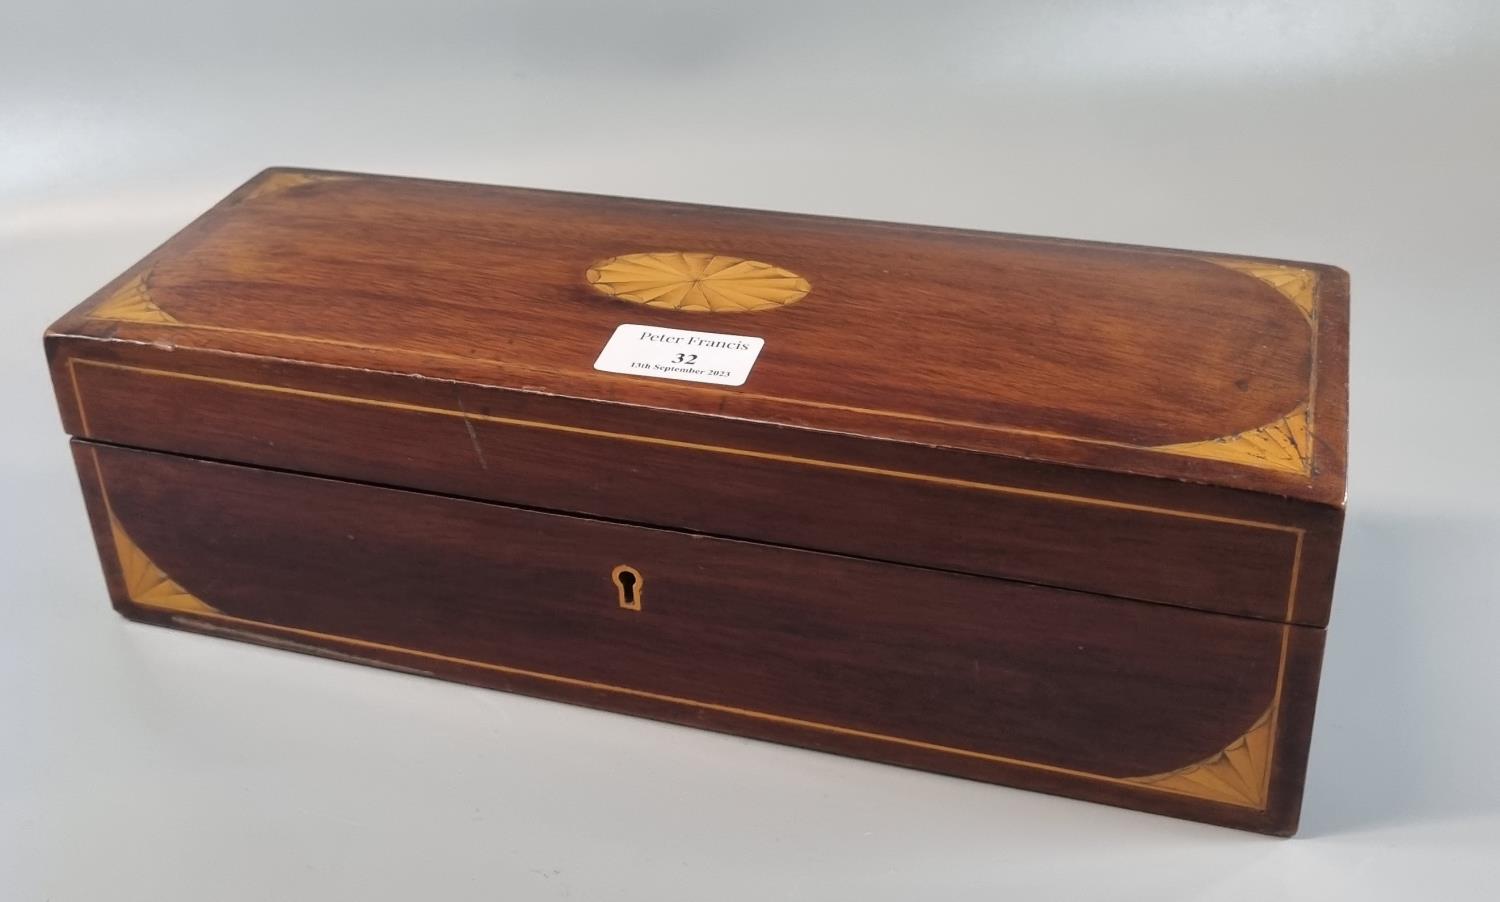 Edwardian mahogany inlaid and cross banded glove box. (B.P. 21% + VAT)